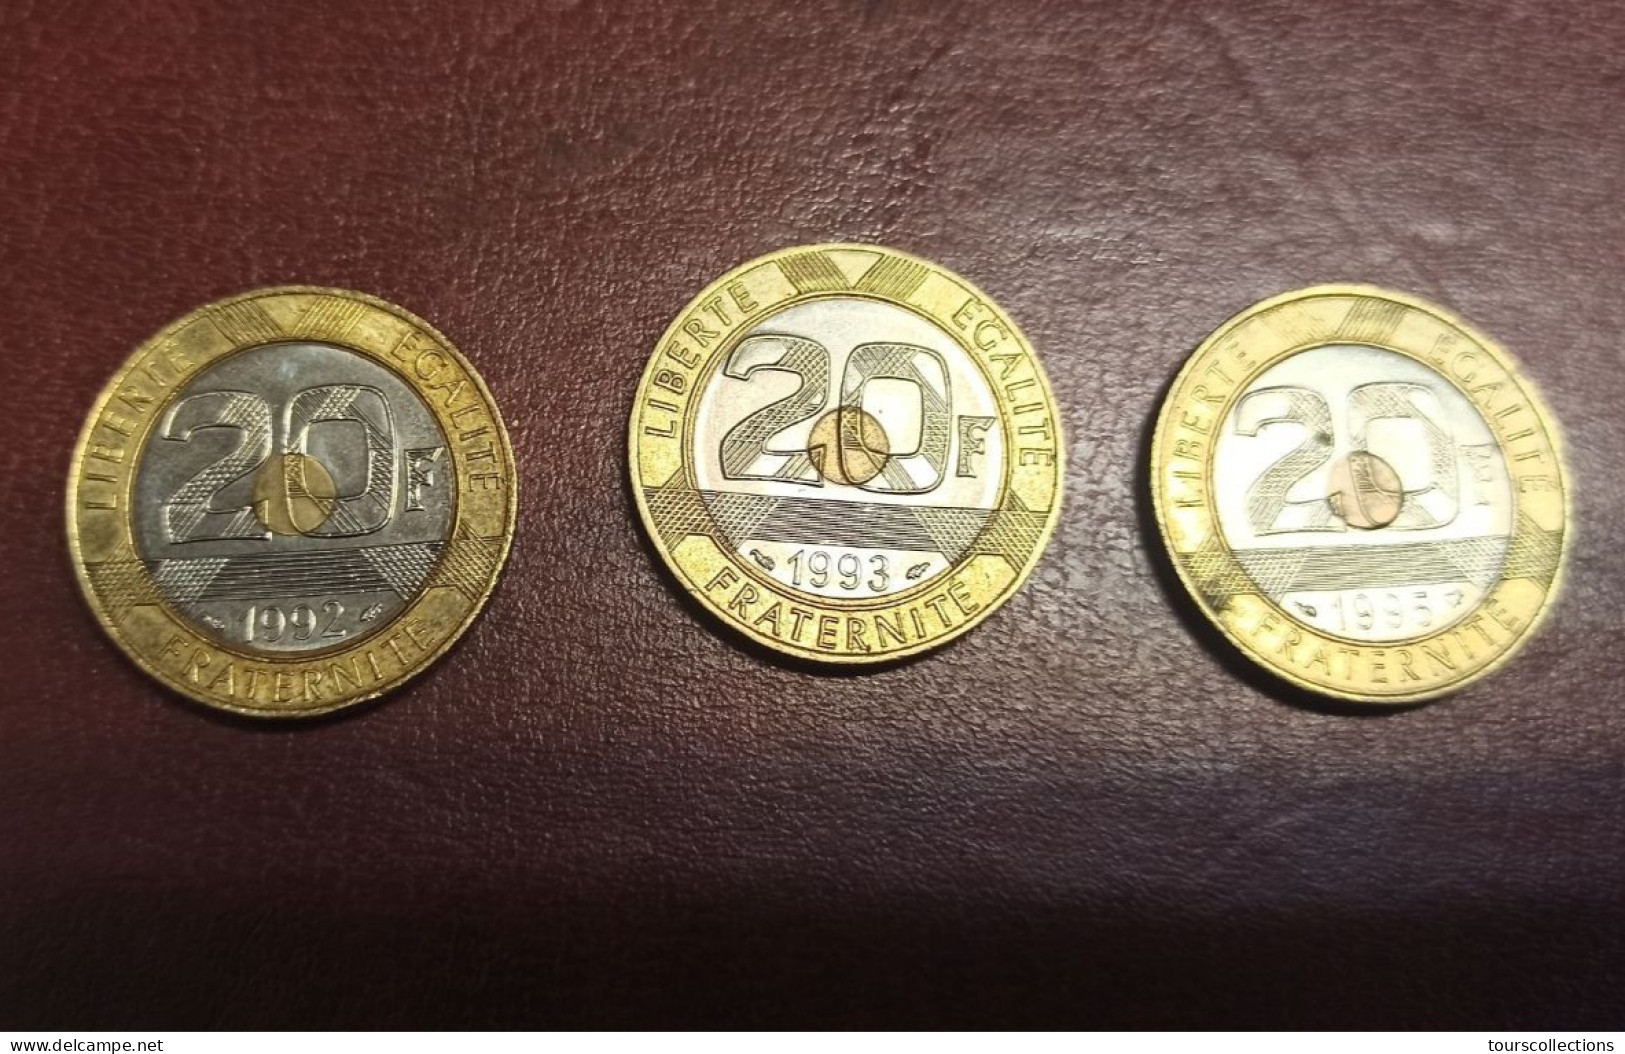 FRANCE - LOT 5 Monnaies De 20 FRANCS Mont Saint Michel 1992, 1993, 1995 Et Commémoratives 1993 Et 1994 Jeux Et Coubertin - 20 Francs